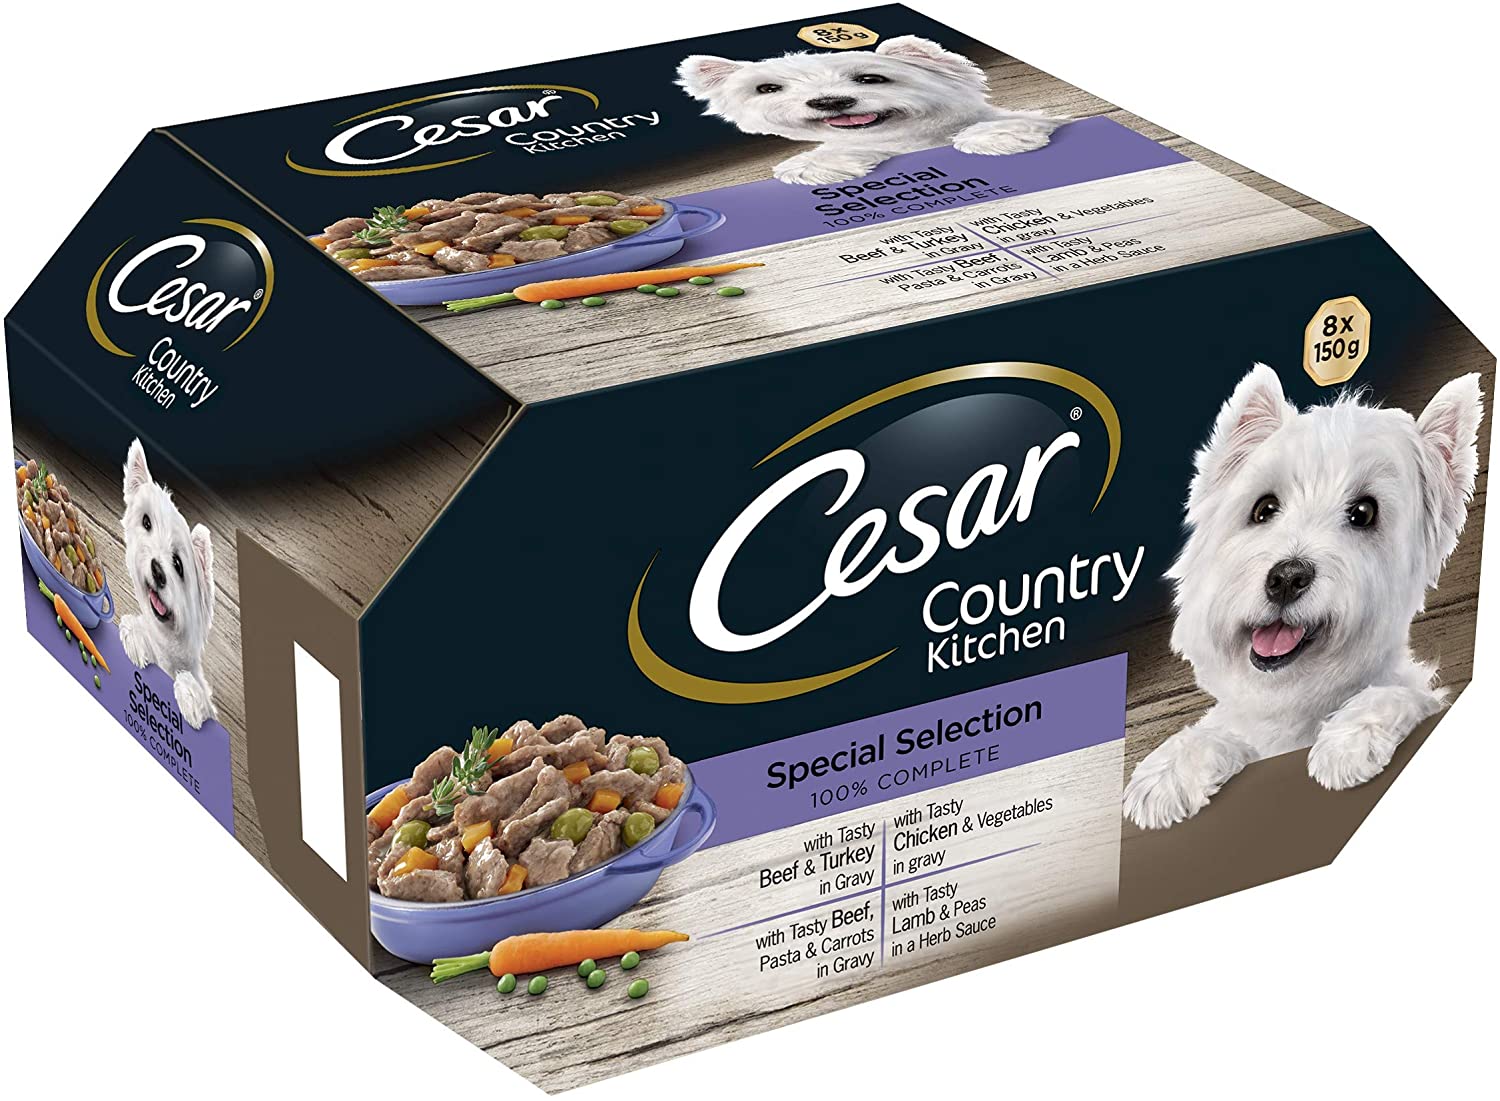  Cesar Country Kitchen - Comida para perros, selección especial, 8 x 150 g, paquete de 3 